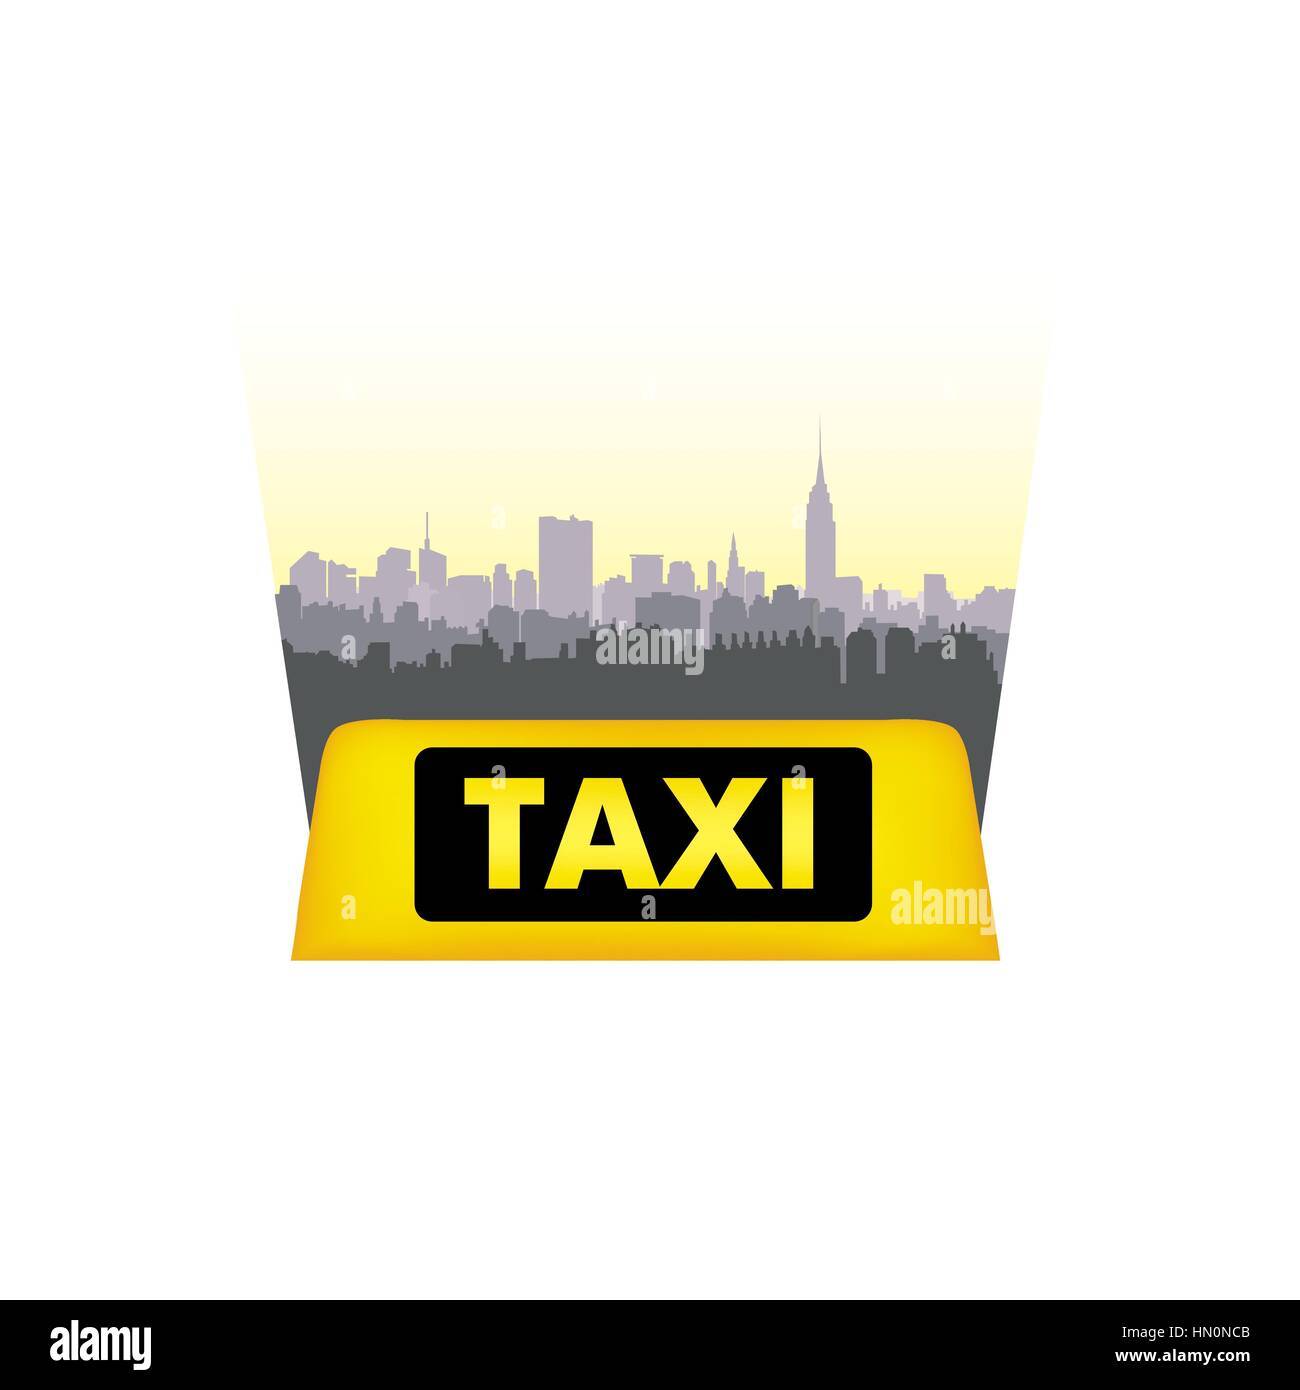 2.500+ Fotos, Bilder und lizenzfreie Bilder zu Taxischild - iStock